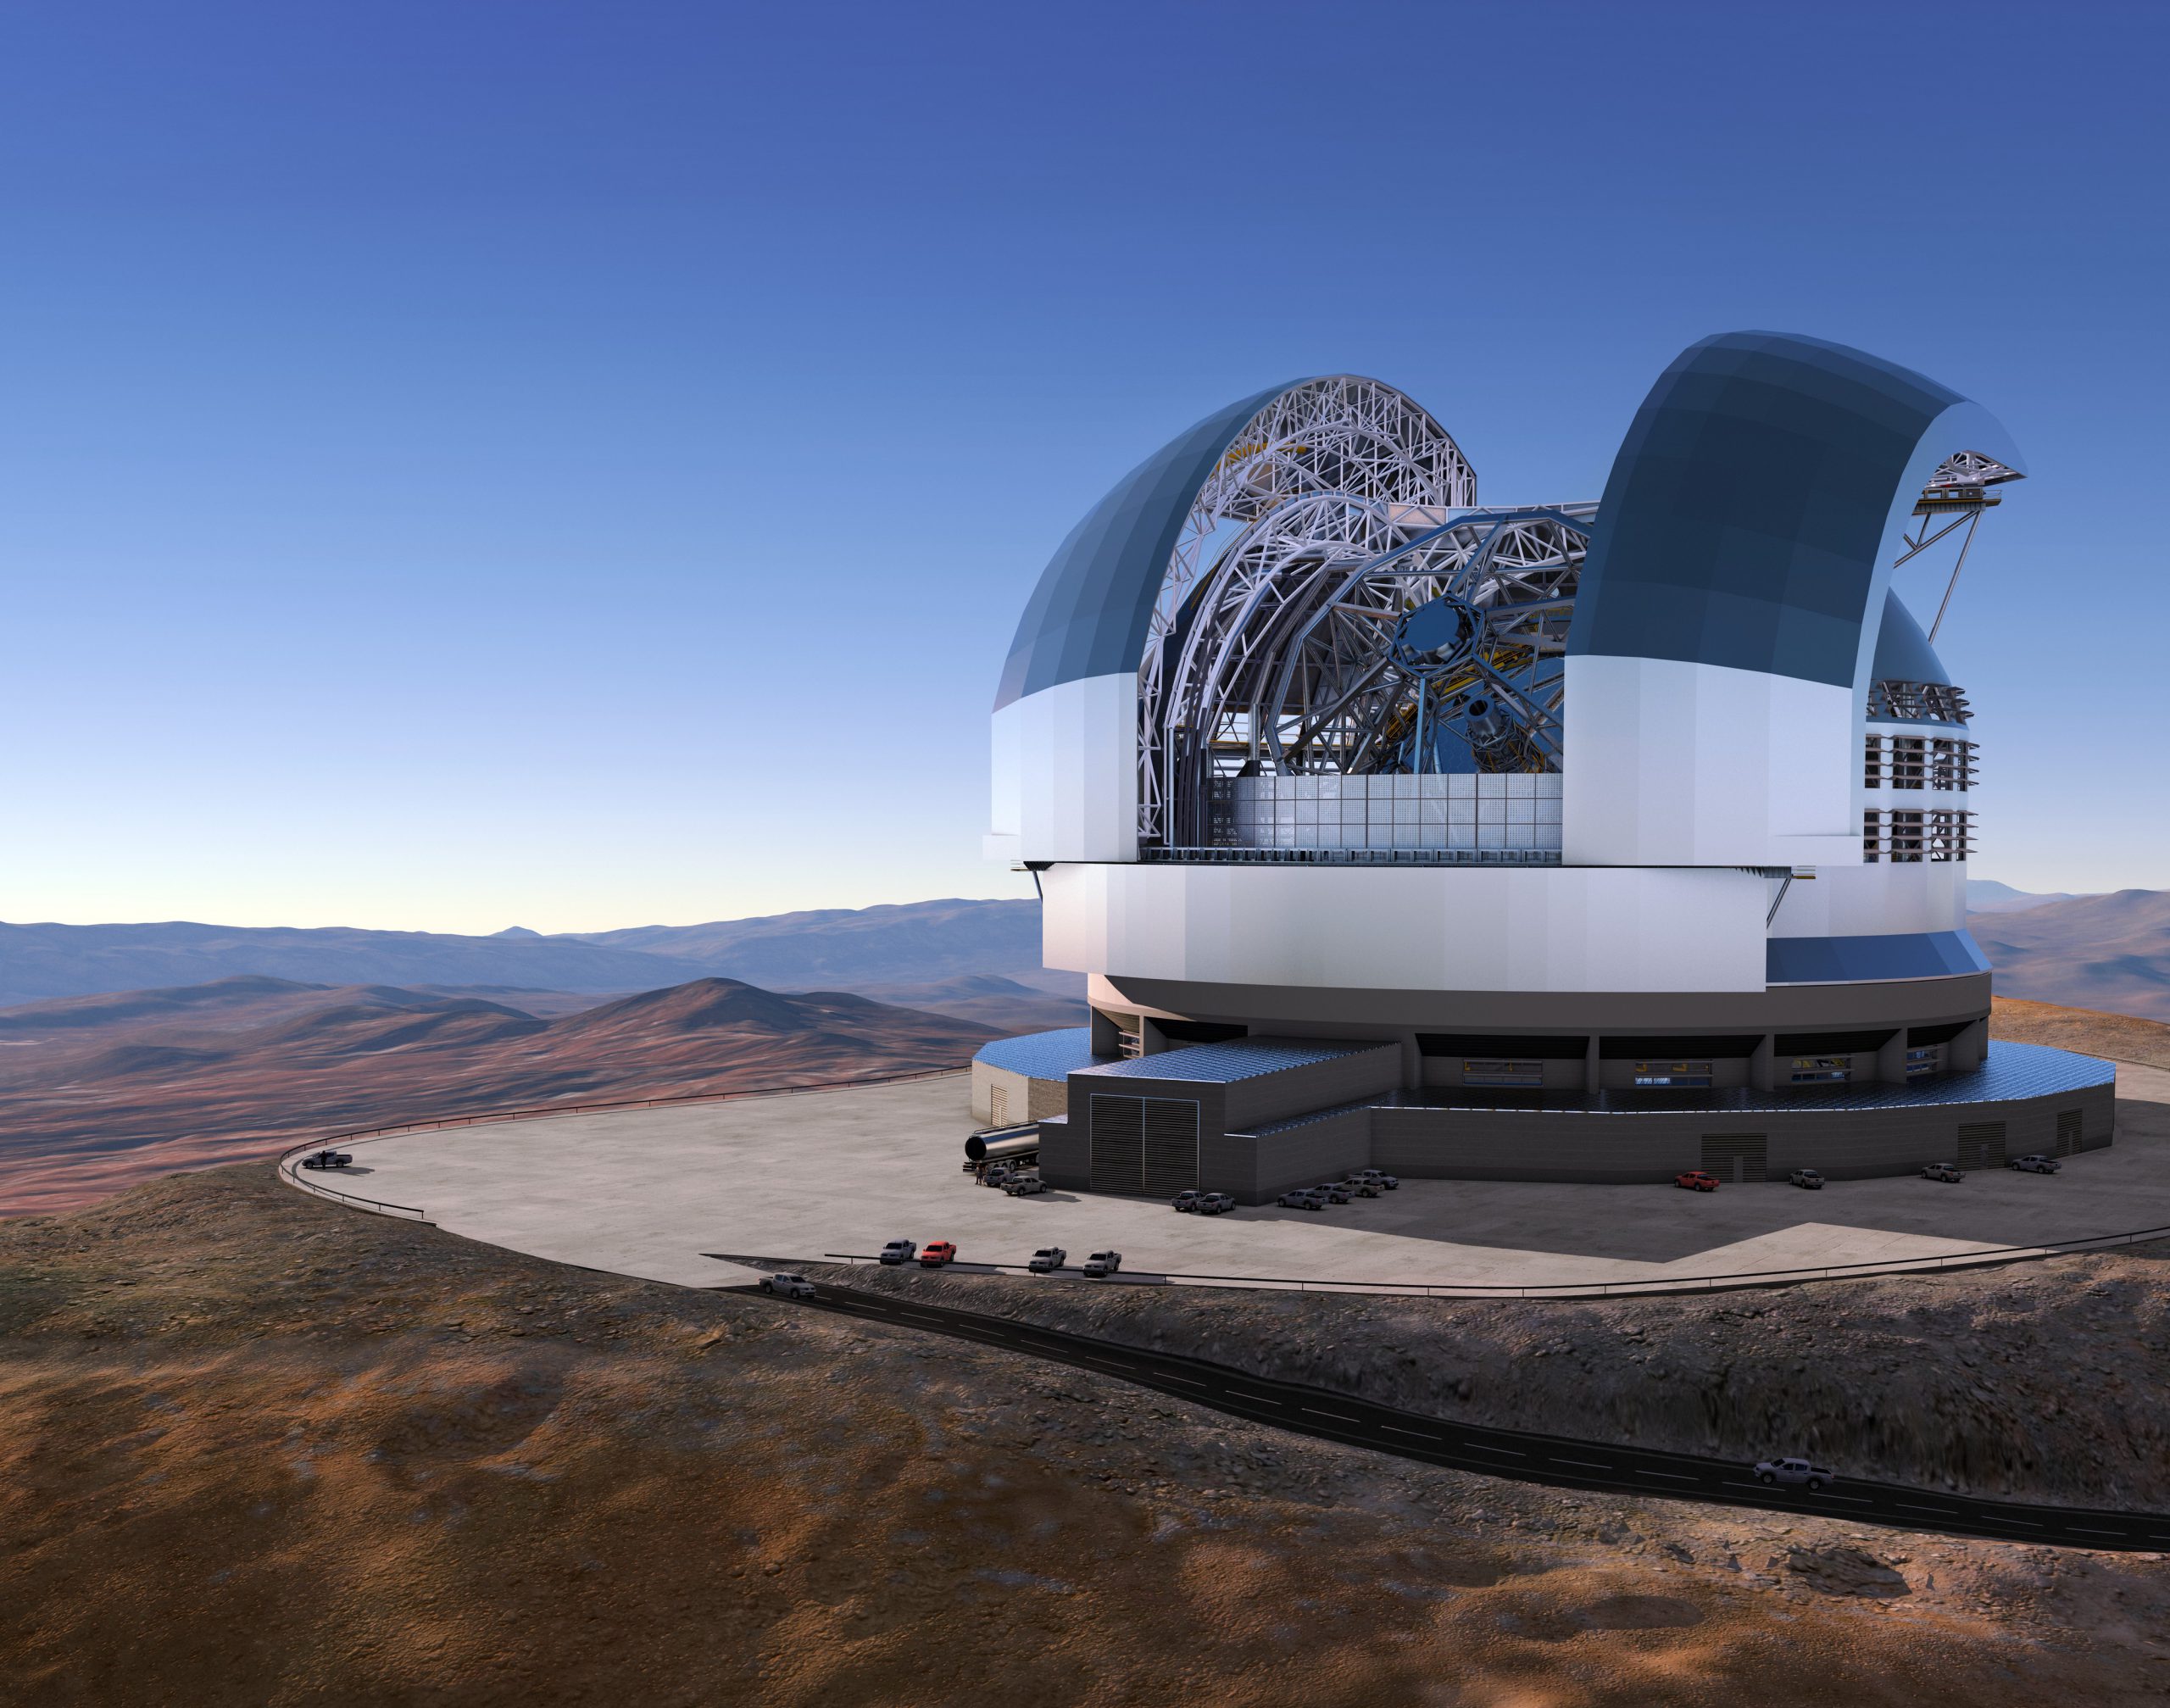 Das European Extremely Large Telescope (ELT) wird einen Hauptspiegel mit ca. 39 Metern Durchmesser haben, der aus ca. achthundert sechseckigen Spiegelelementen zusammengesetzt ist, und soll 2024 sein erstes Licht sehen. Bild: ESO